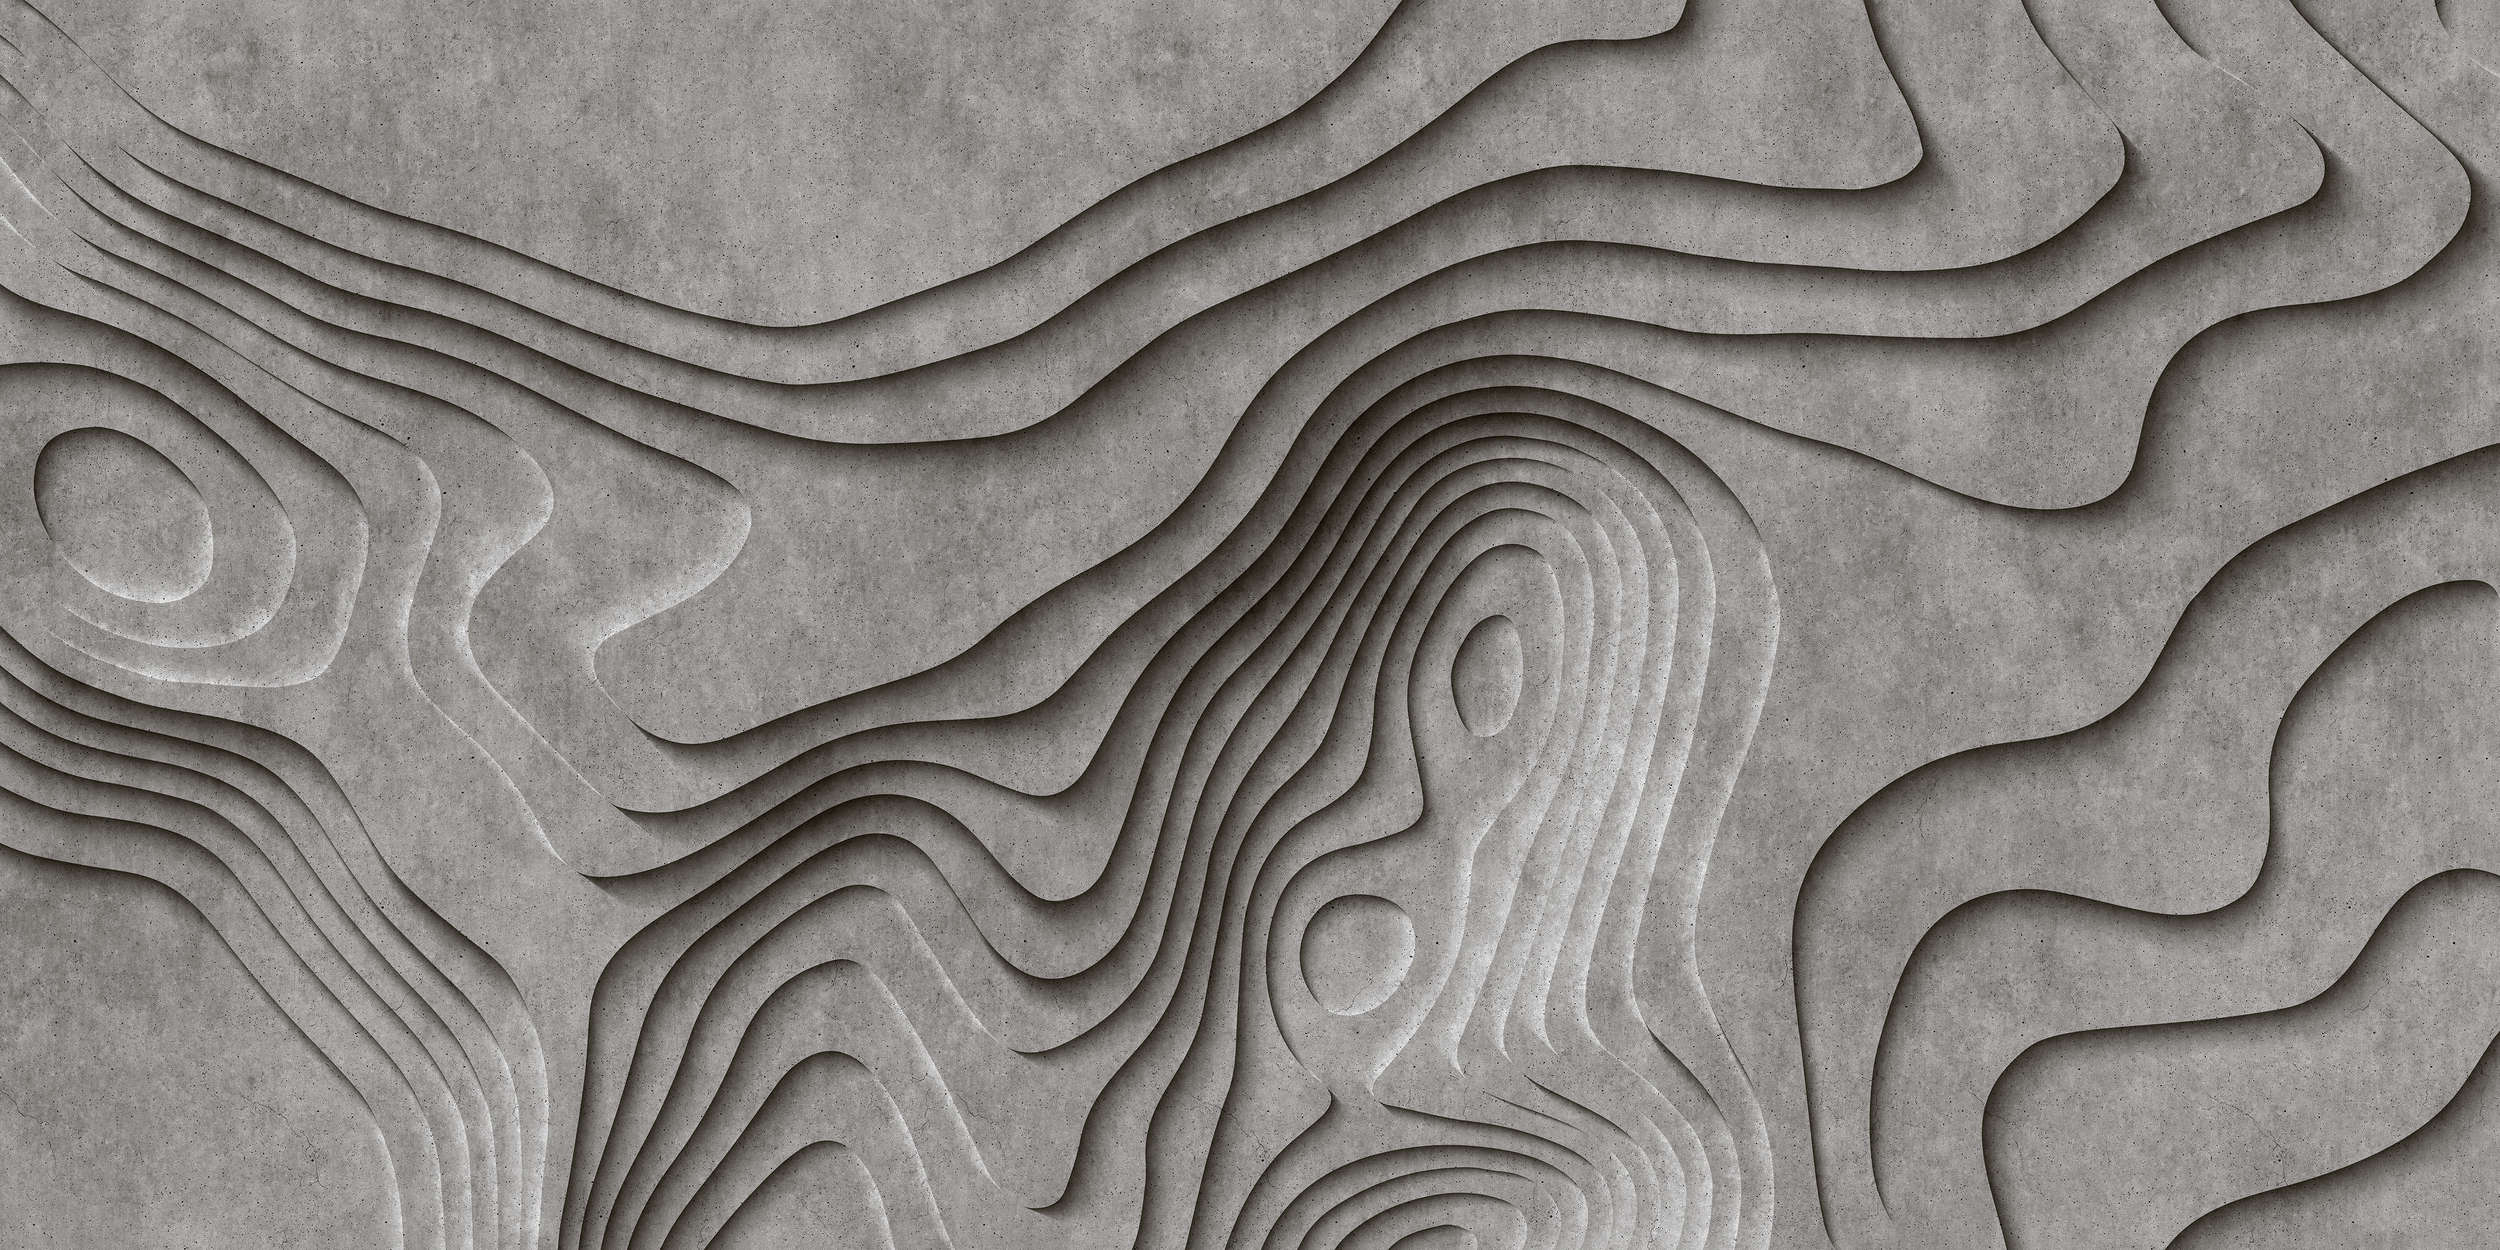             Canyon 1 - Coole 3D Beton-Canyon Fototapete – Grau, Schwarz | Struktur Vlies
        